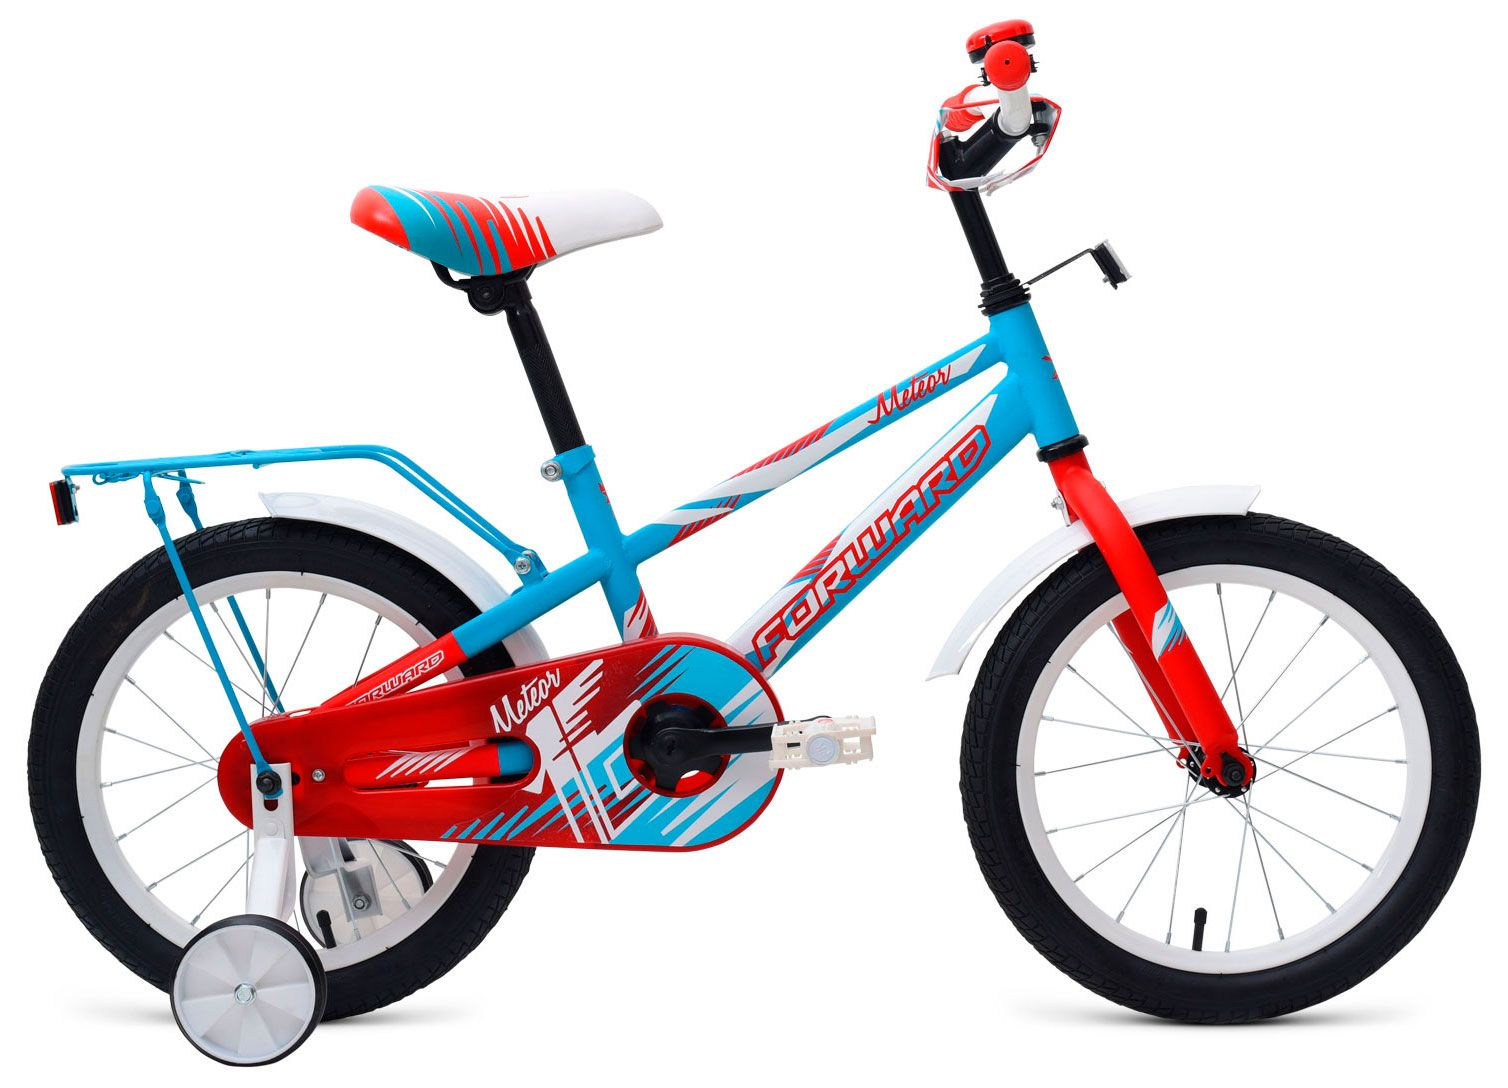  Отзывы о Трехколесный детский велосипед Forward Meteor 16 2018